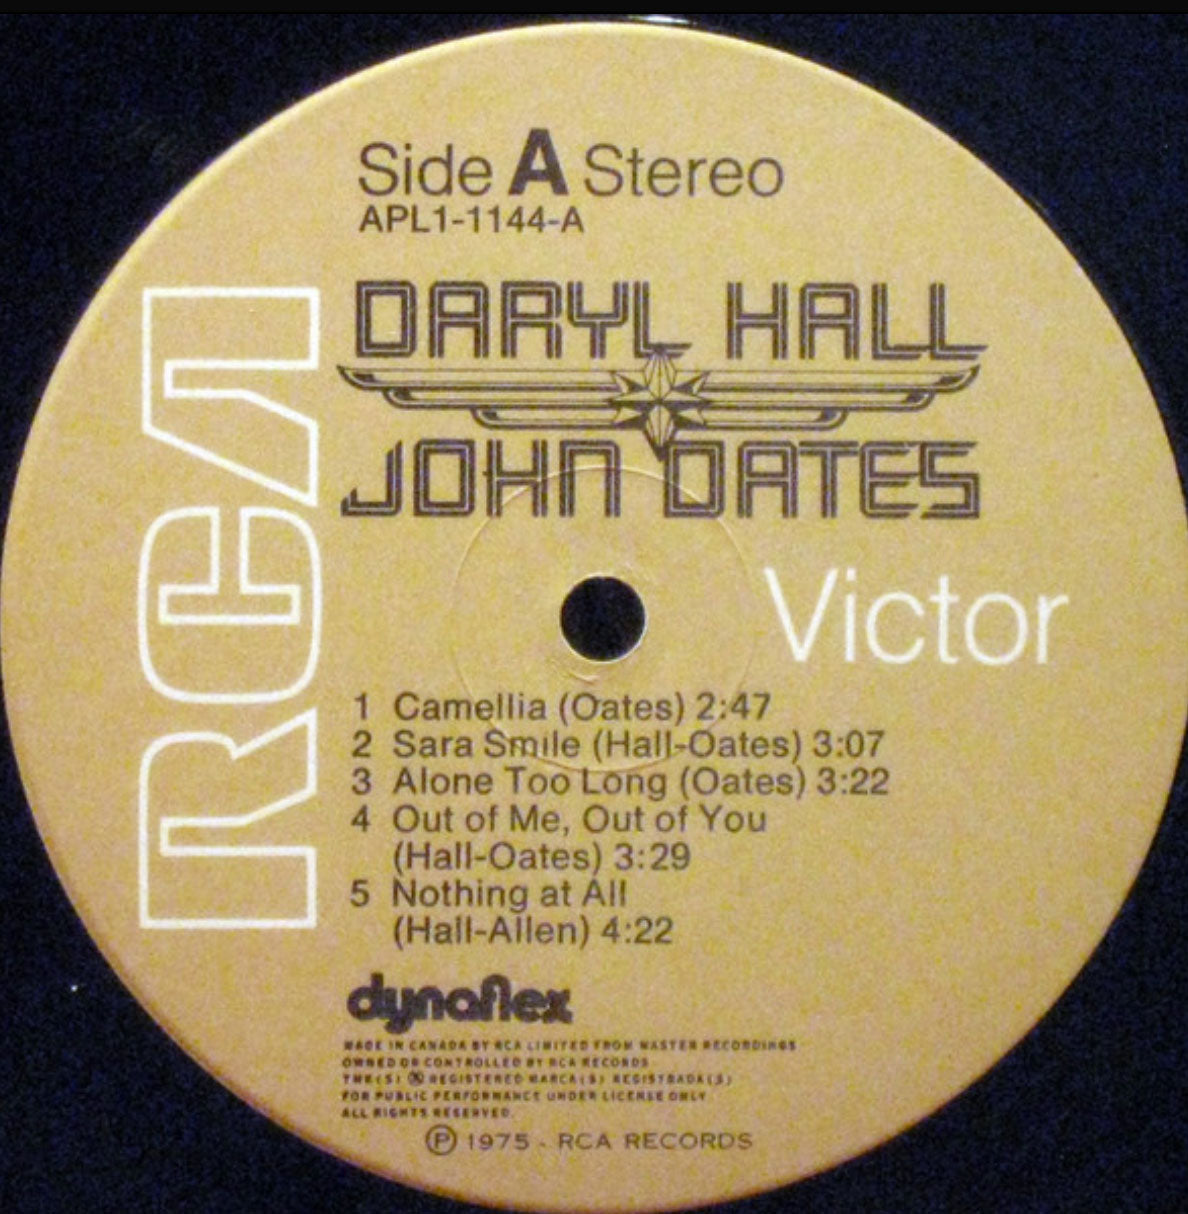 Daryl Hall and John Oates – Daryl Hall and John Oates